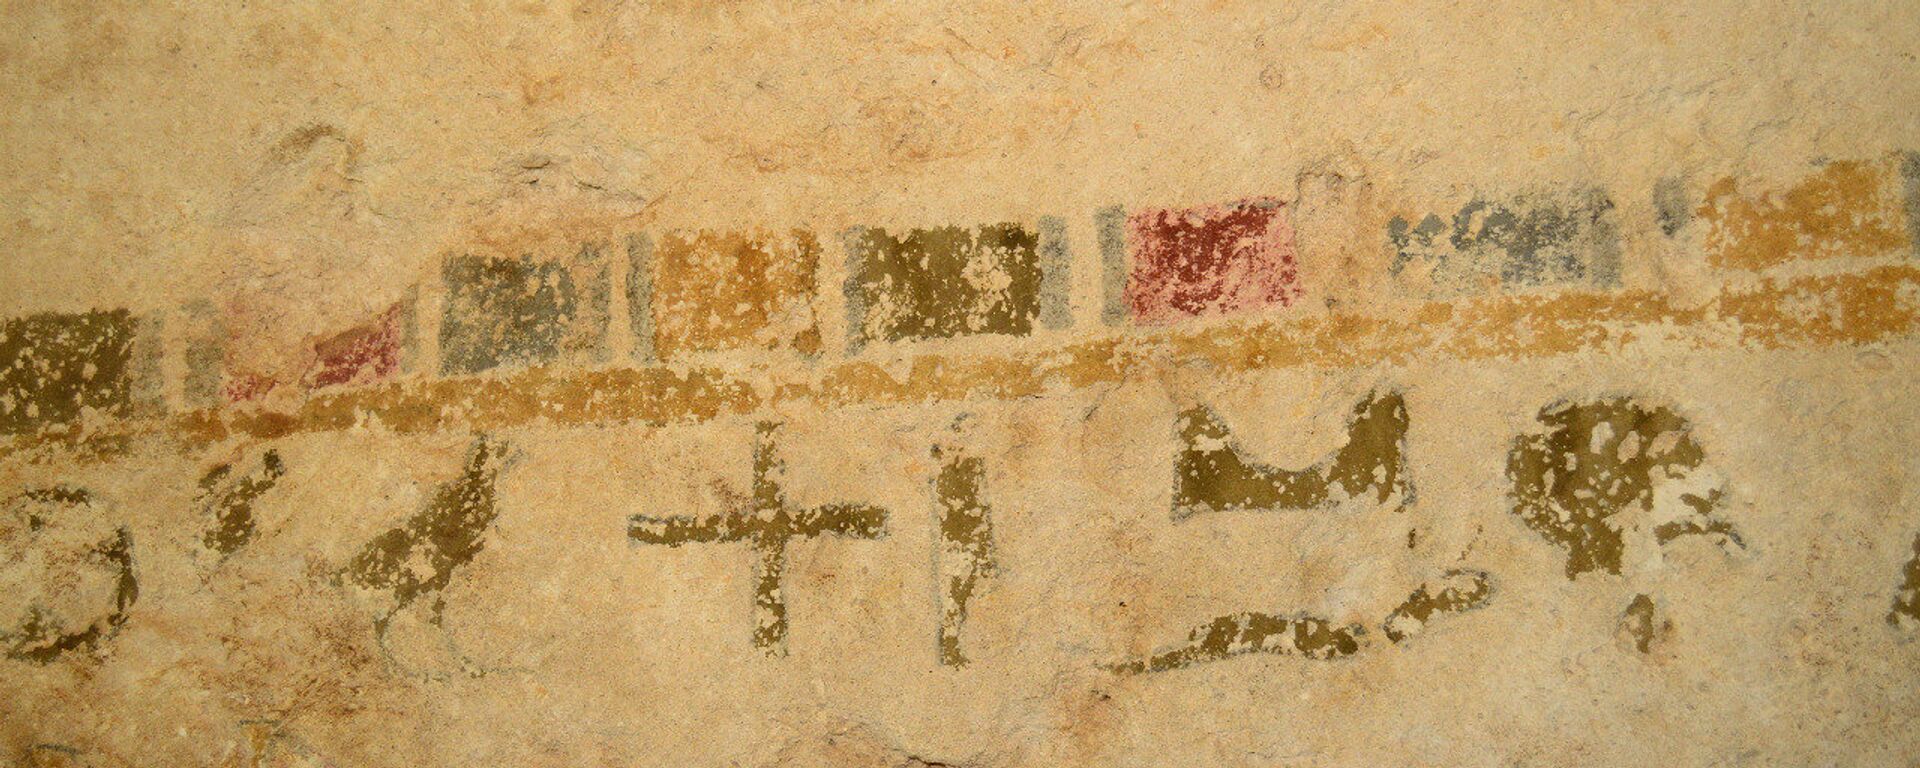 اكتشاف نقوش فرعونية جديدة داخل منطقة آثار بنى حسن بمحافظة المنيا في مصر في 21 مارس / آذار 2018 - سبوتنيك عربي, 1920, 24.02.2021